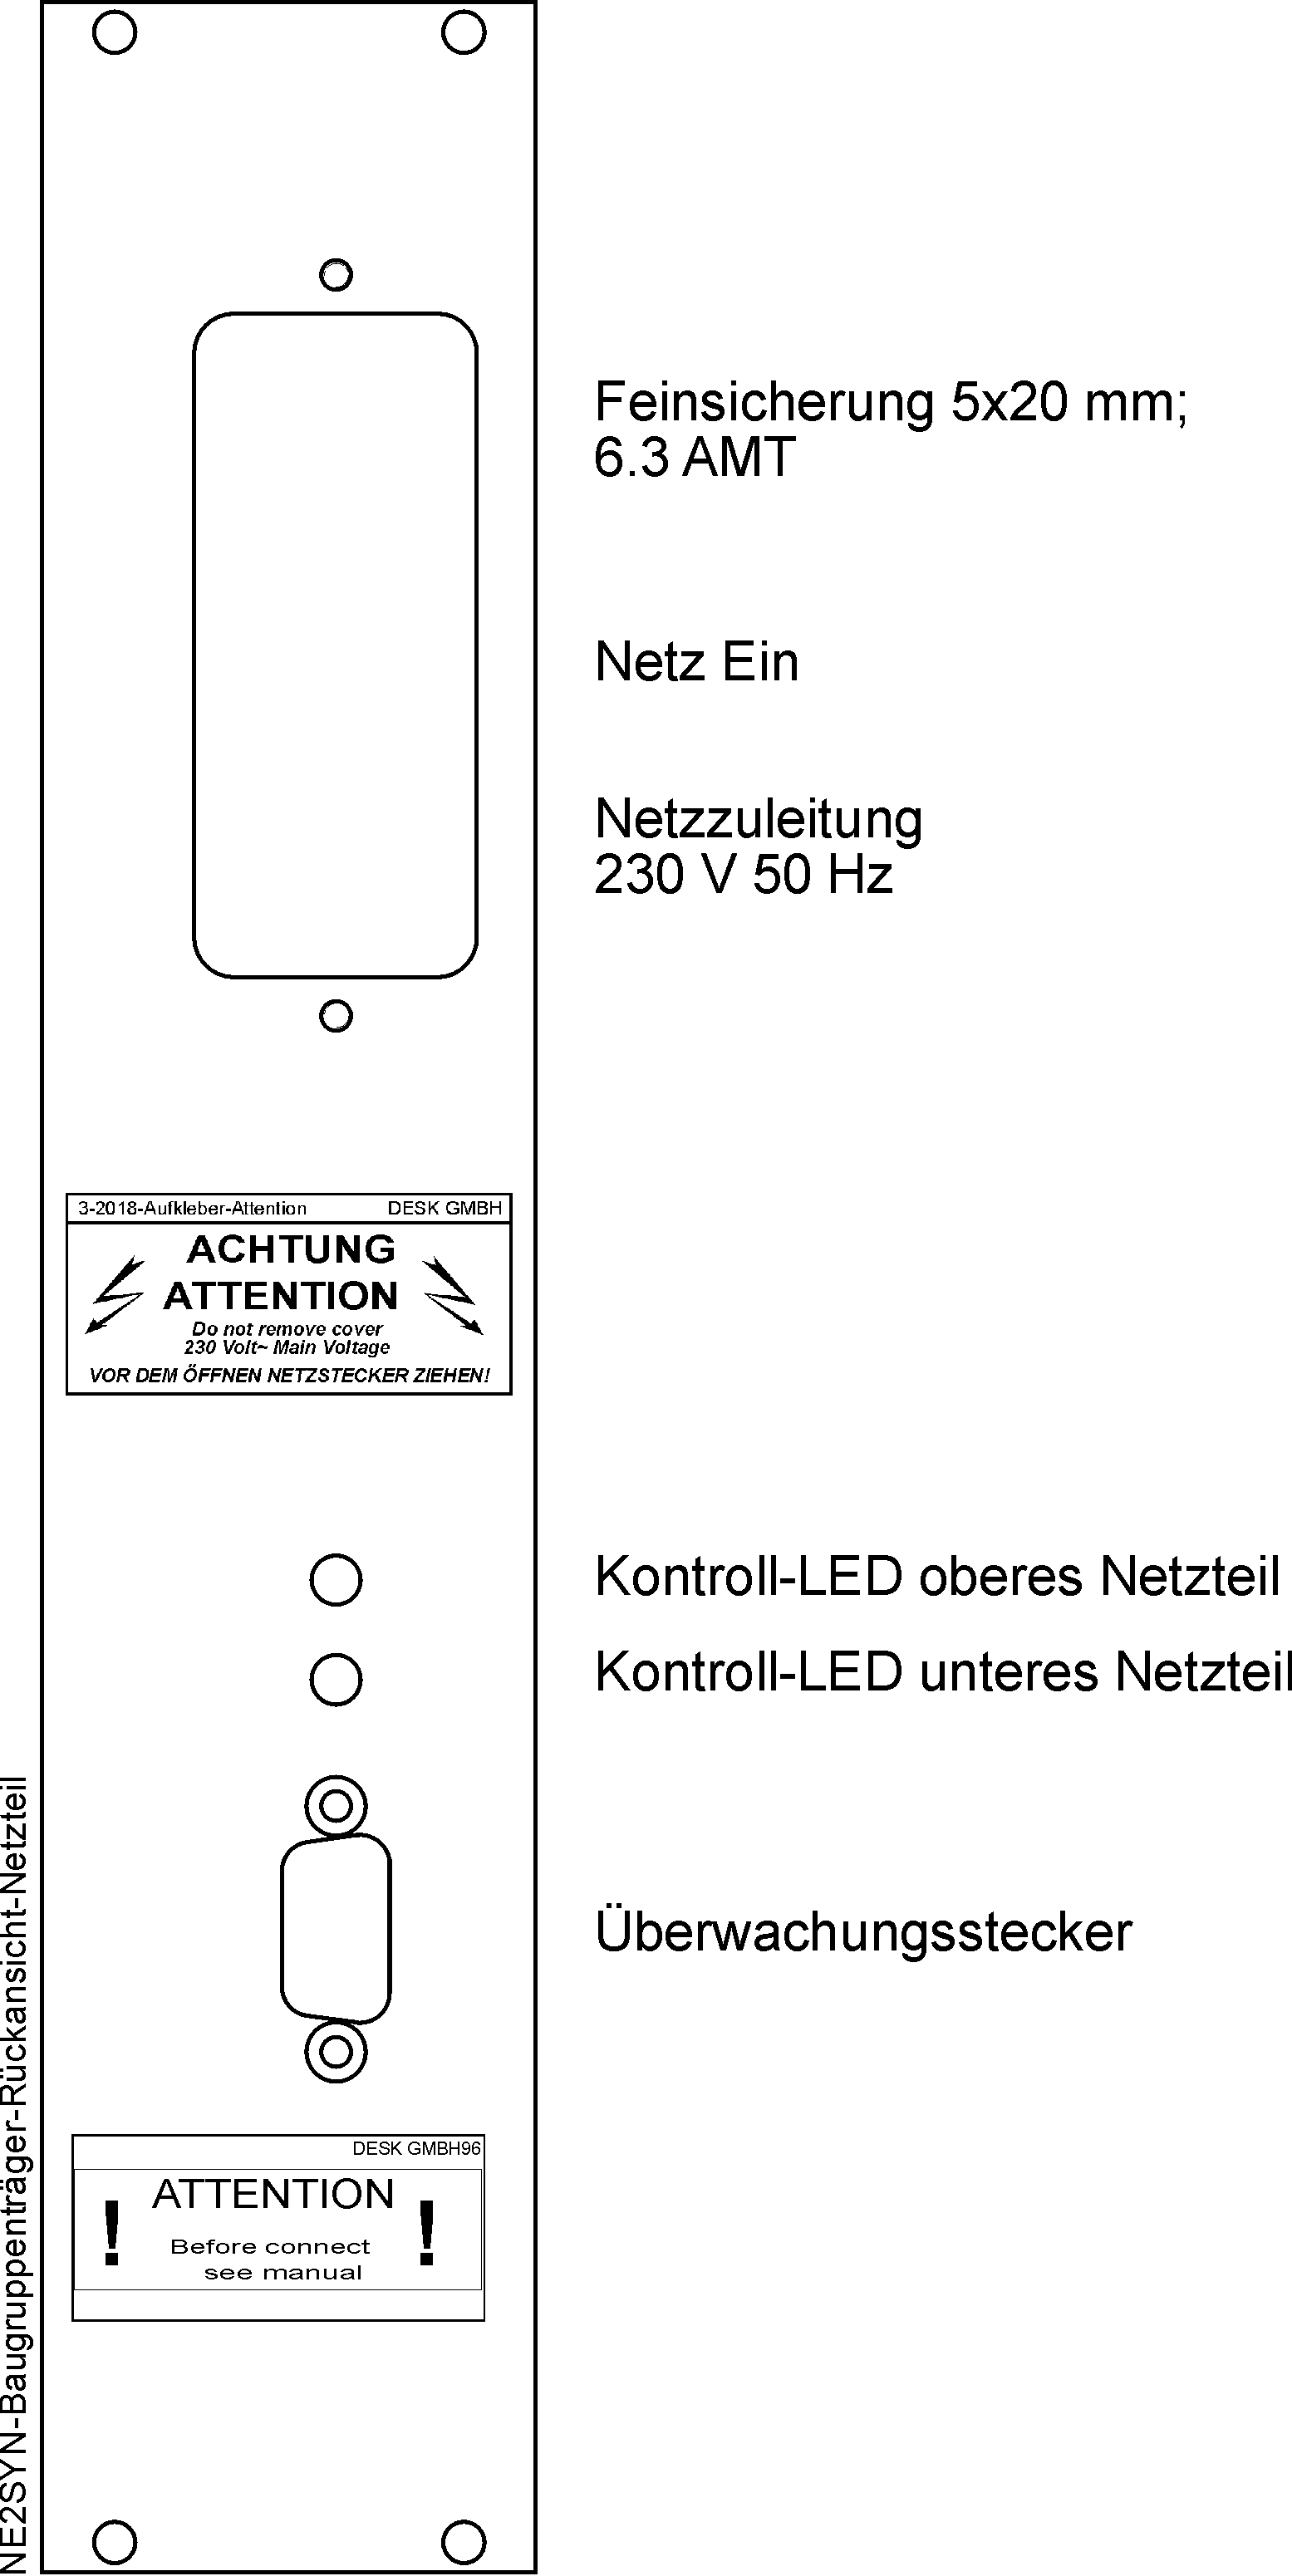 DESK-GmbH_NE2SYN-Baugruppenträger-Rückansicht-Netzteil